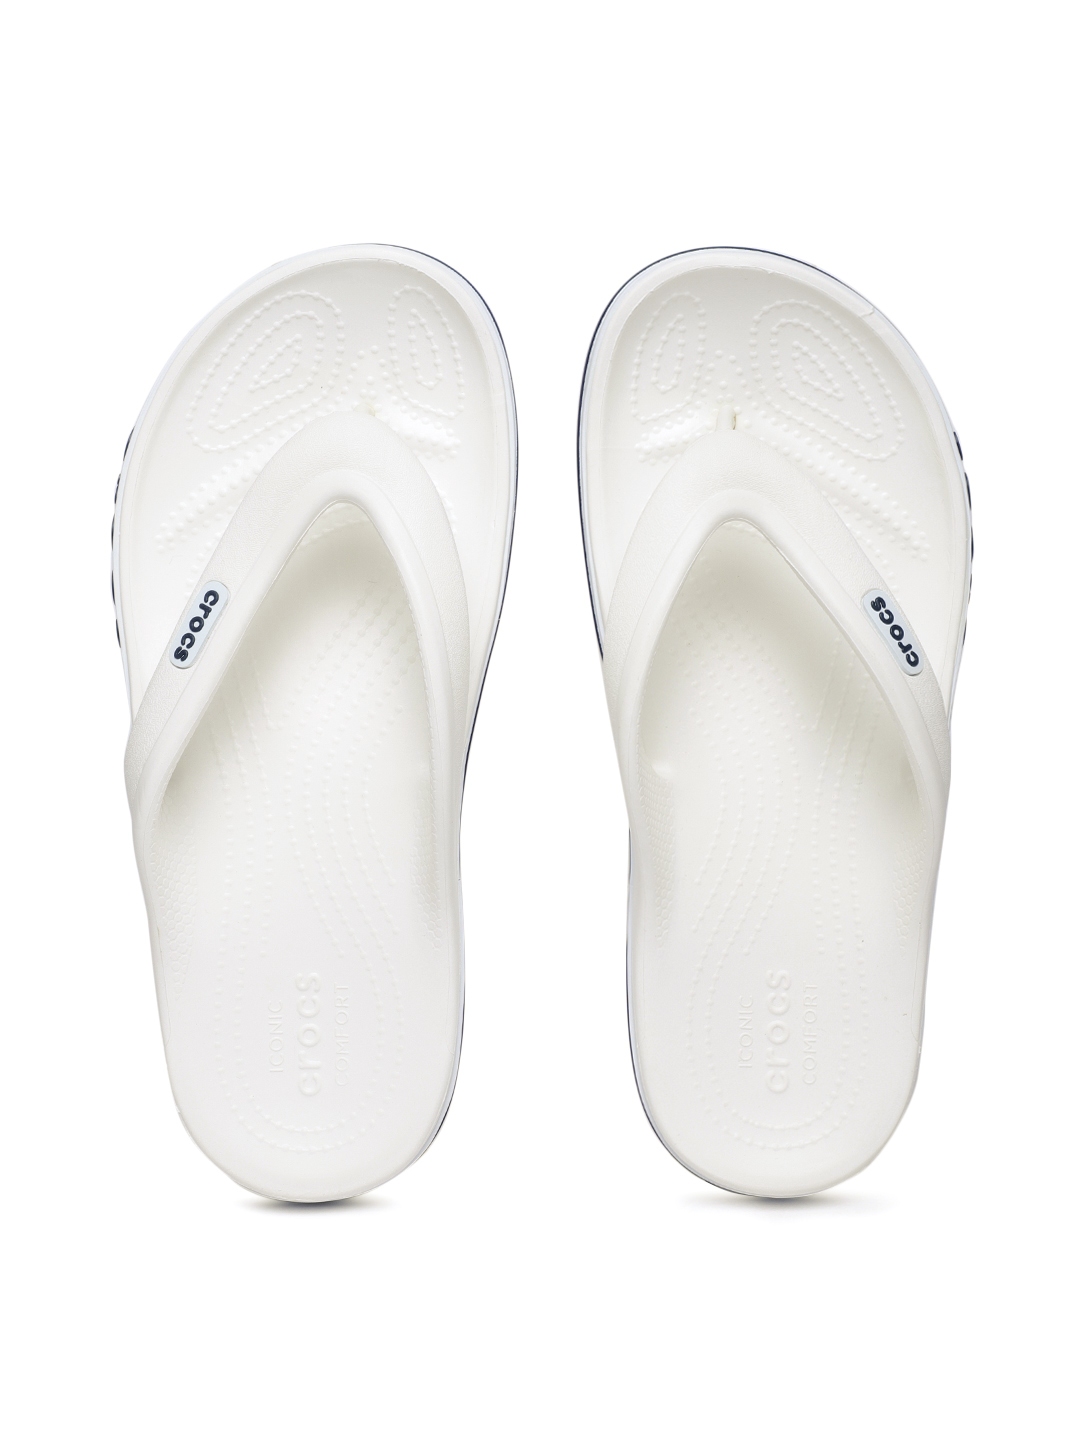 Buy Crocs Unisex White Solid Thong Flip Flops - Flip Flops for Unisex ...